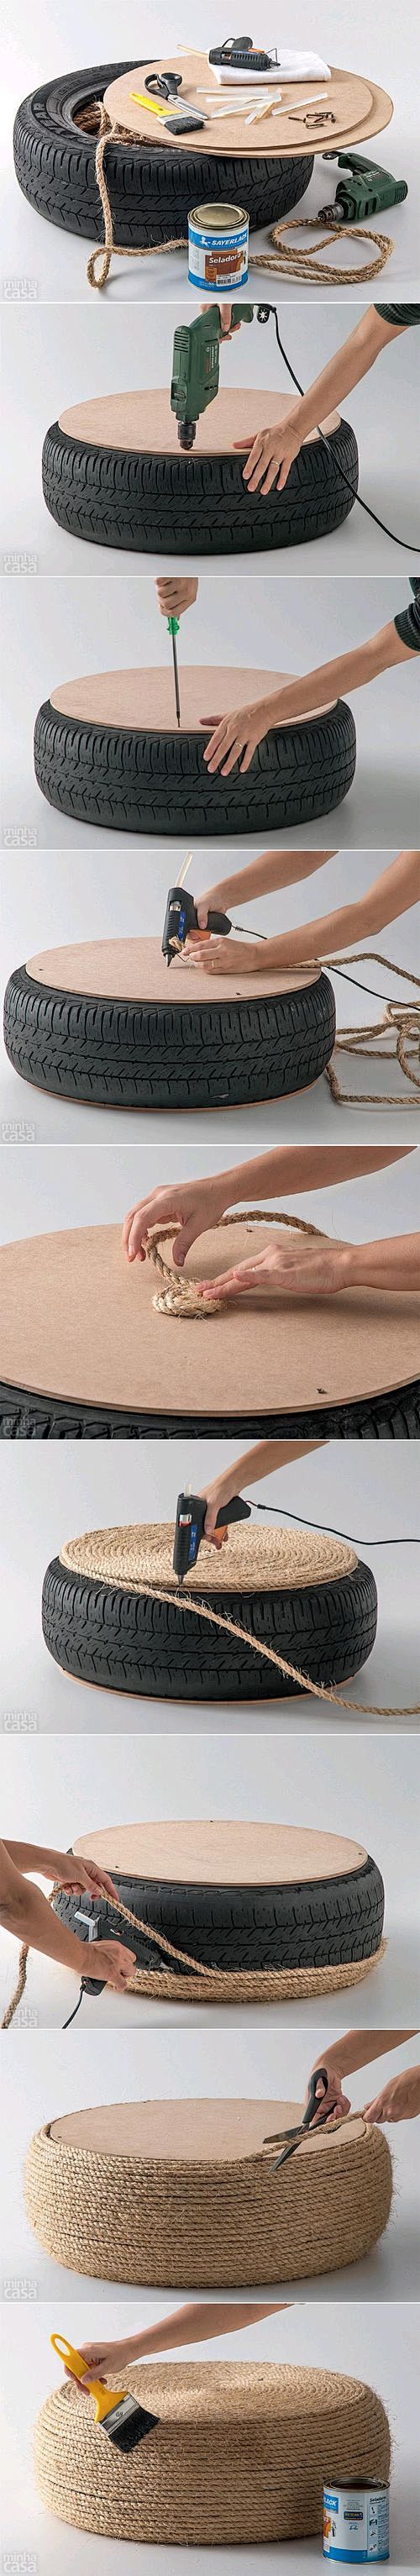 DIY Tire Ottoman DIY...